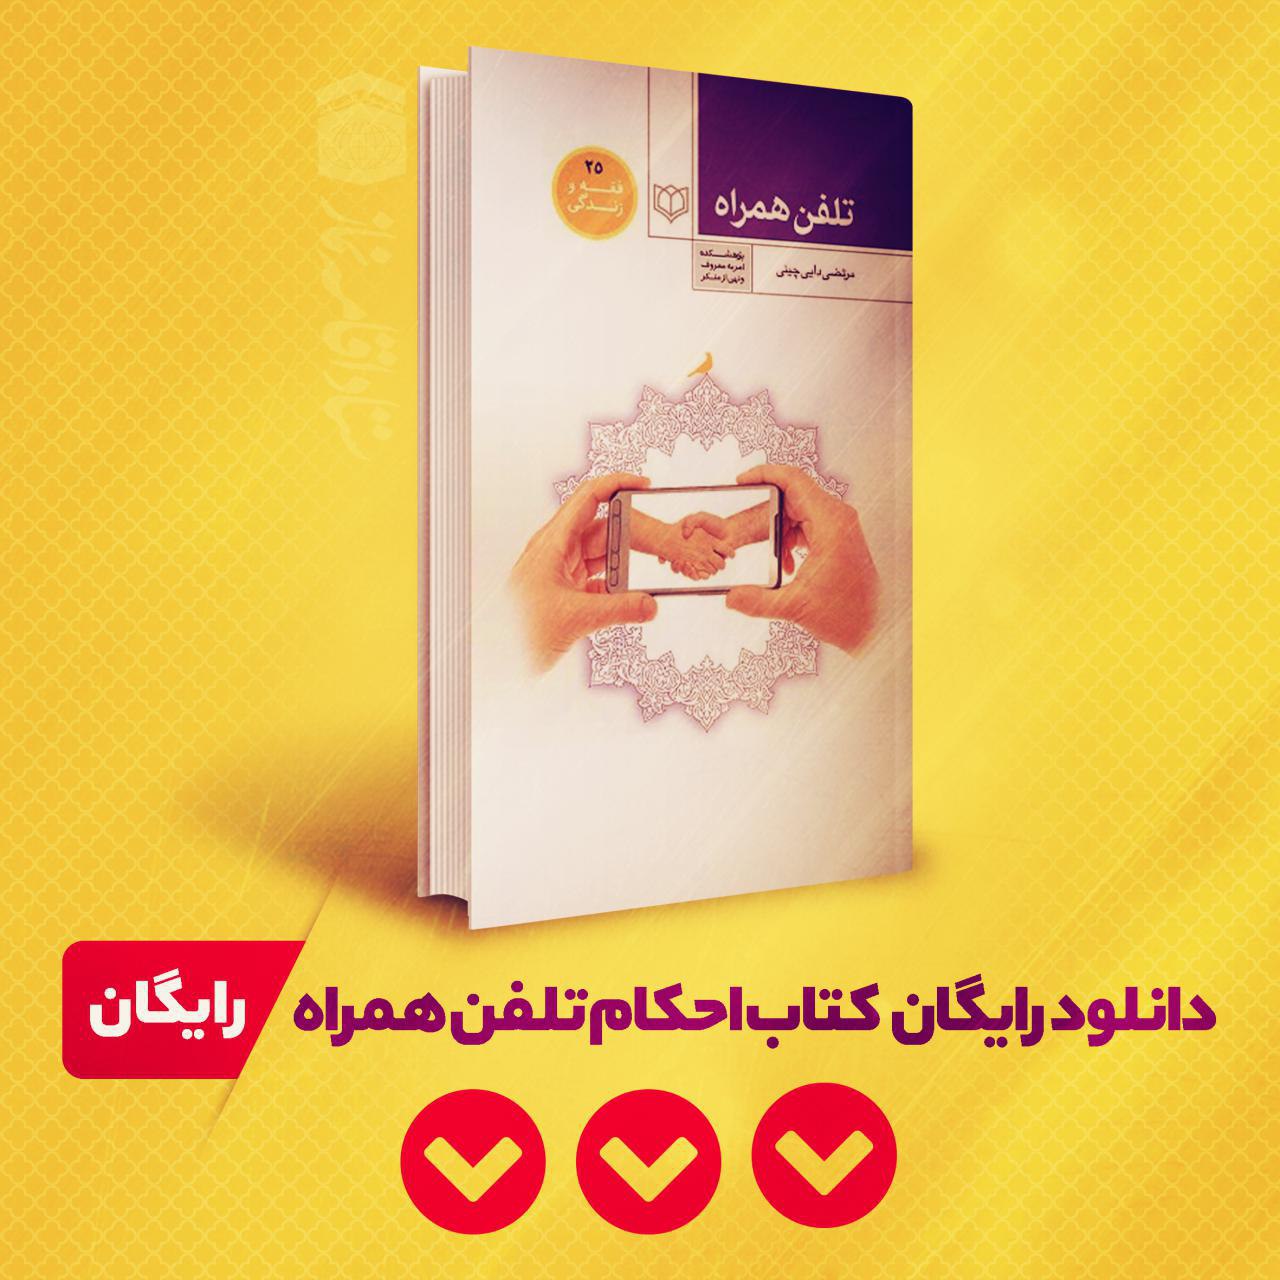 #معرفی_کتاب<br />
این کتاب را از کانال رسمی ستاد قرار هفده می توانید دانلود کنید . التماس دعا 